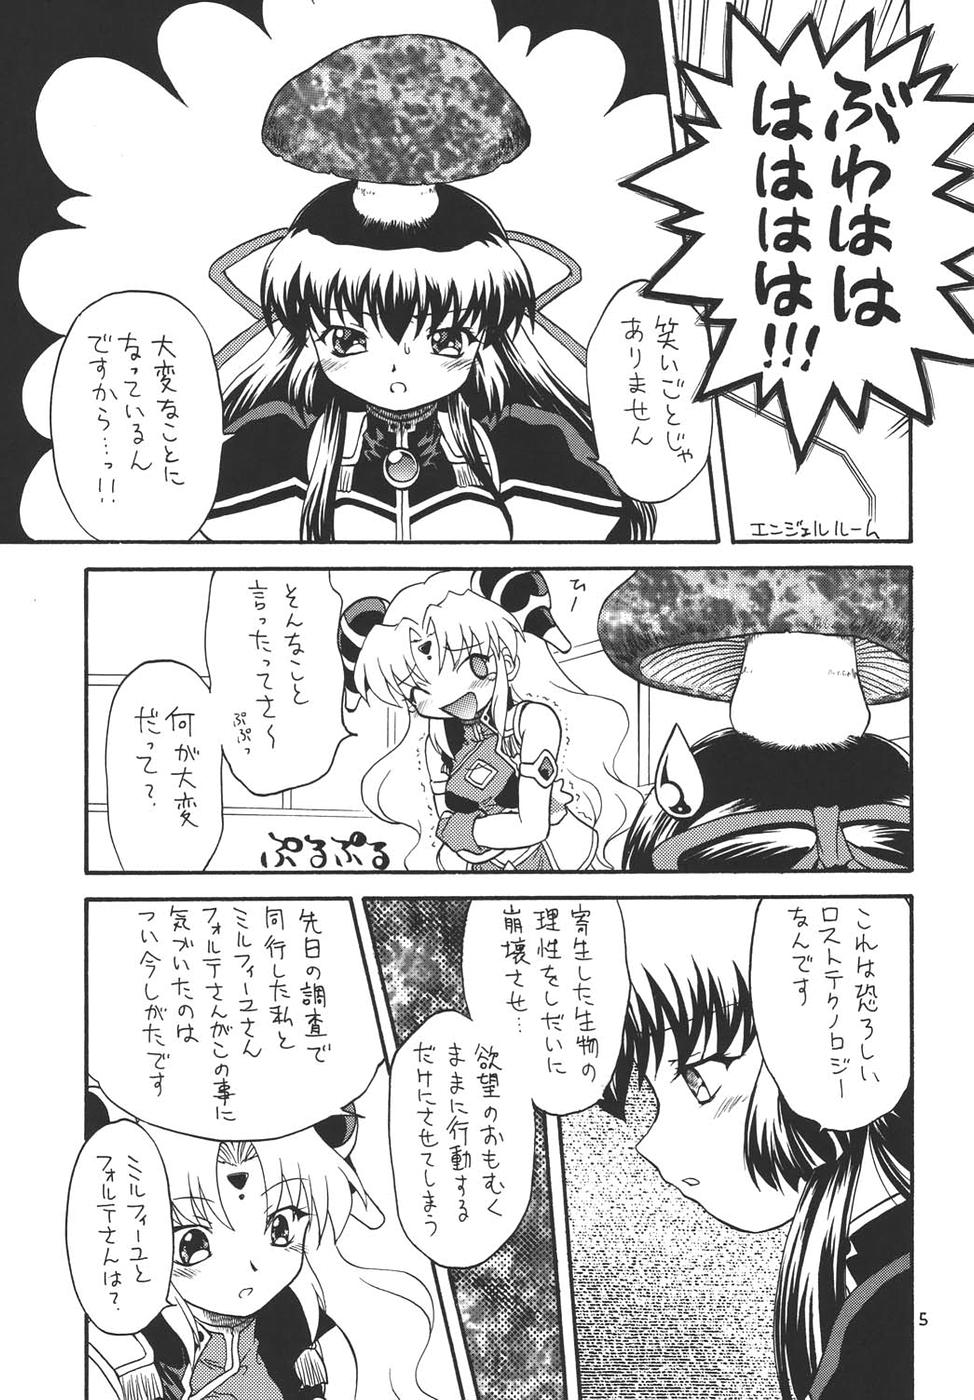 (CR36) [Momo no Tsubomi (Various)] Puchieru 4 (Various) page 4 full